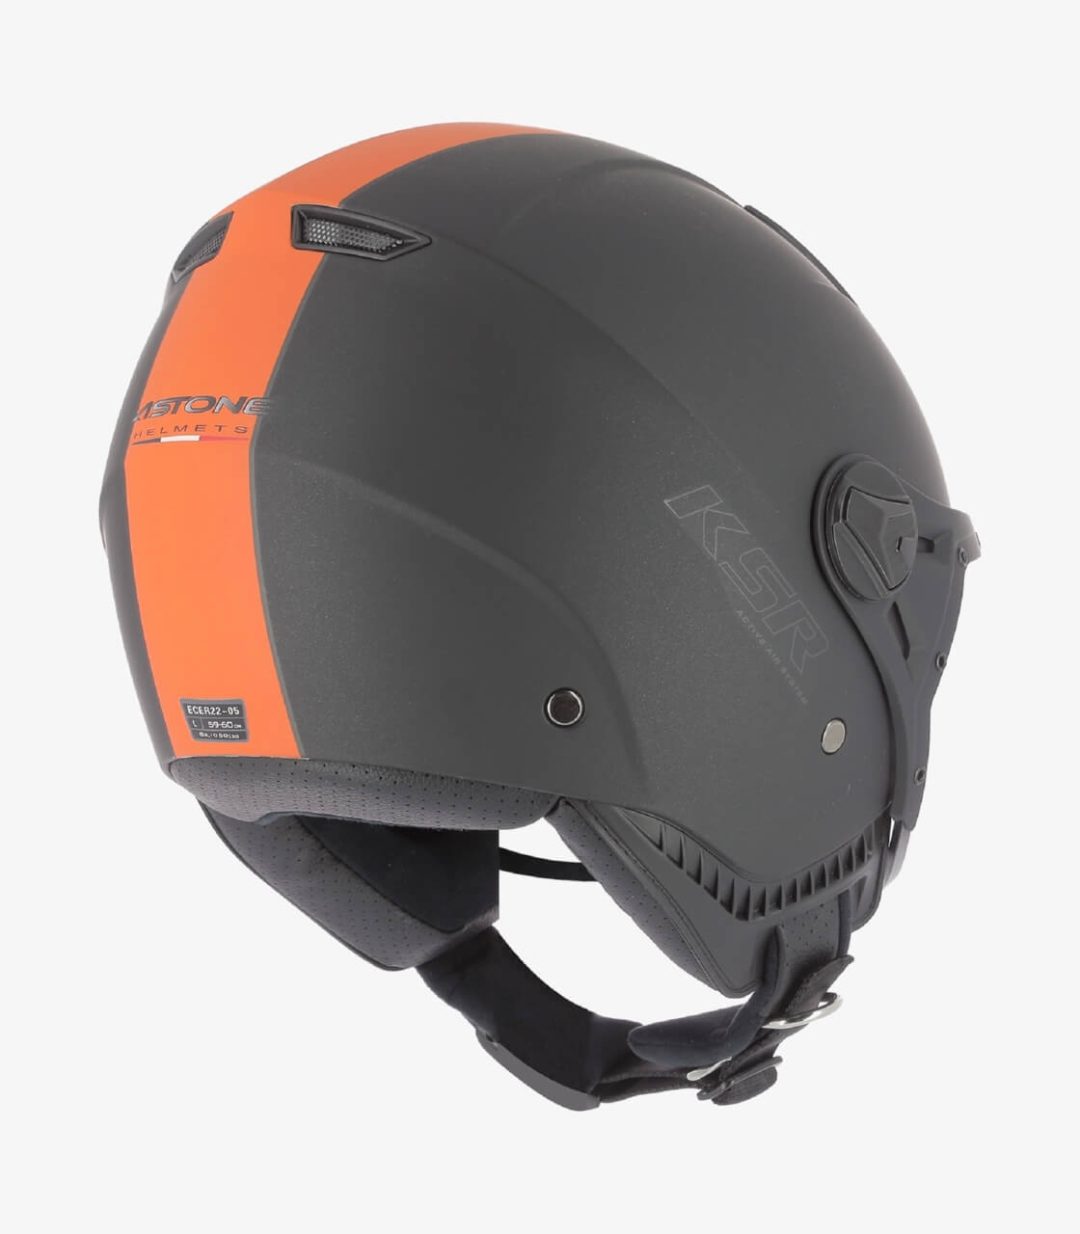 astone-ksr-2-matt-black-orange-open-face-helmet-ksr2g-mbo